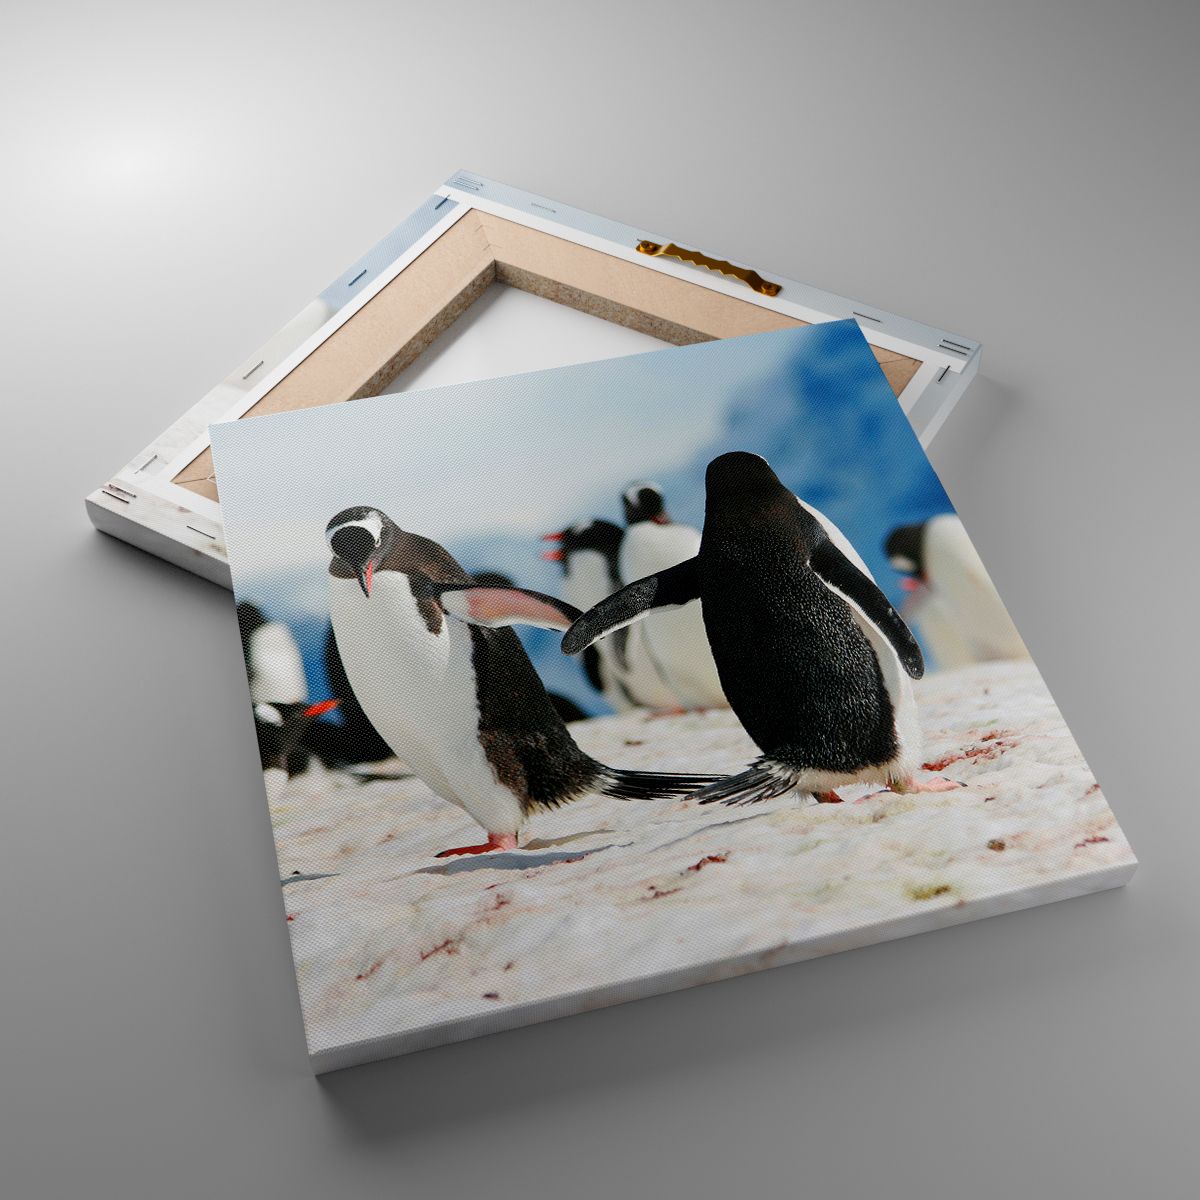 Obrazy Pingwin, Obrazy Antarktyda, Obrazy Krajobraz, Obrazy Śnieg, Obrazy Lód